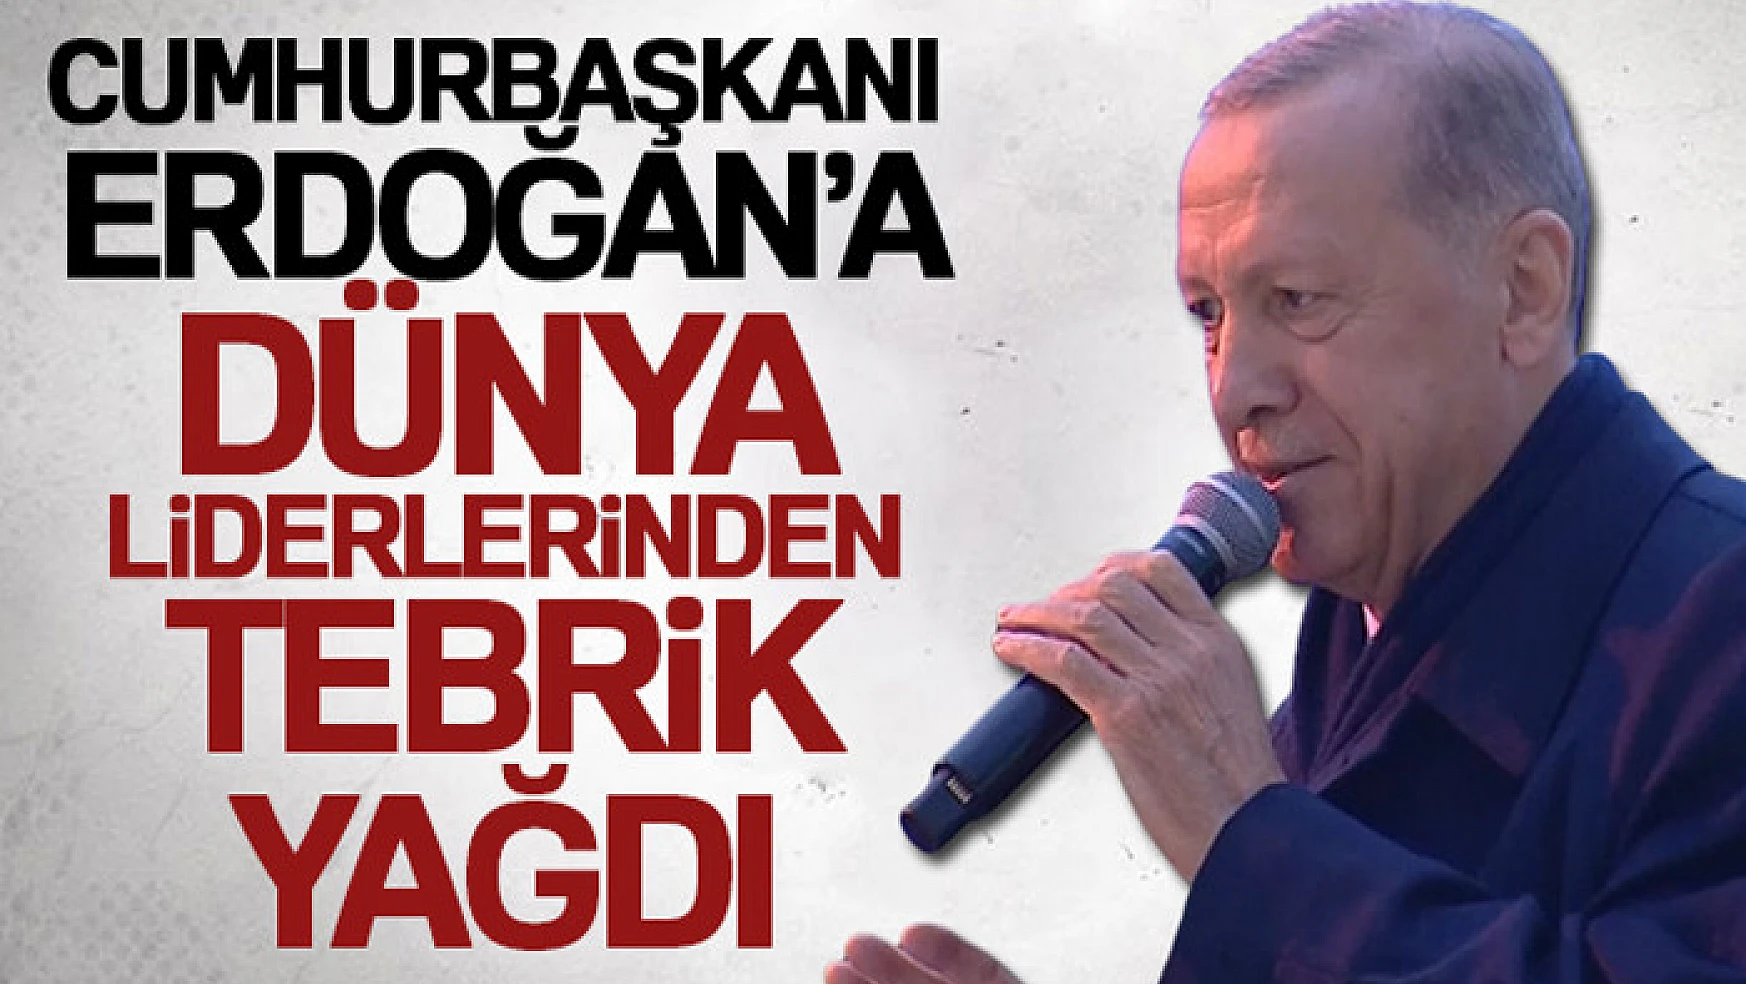 Cumhurbaşkanı Erdoğan'a dünya liderlerinden tebrik yağdı!